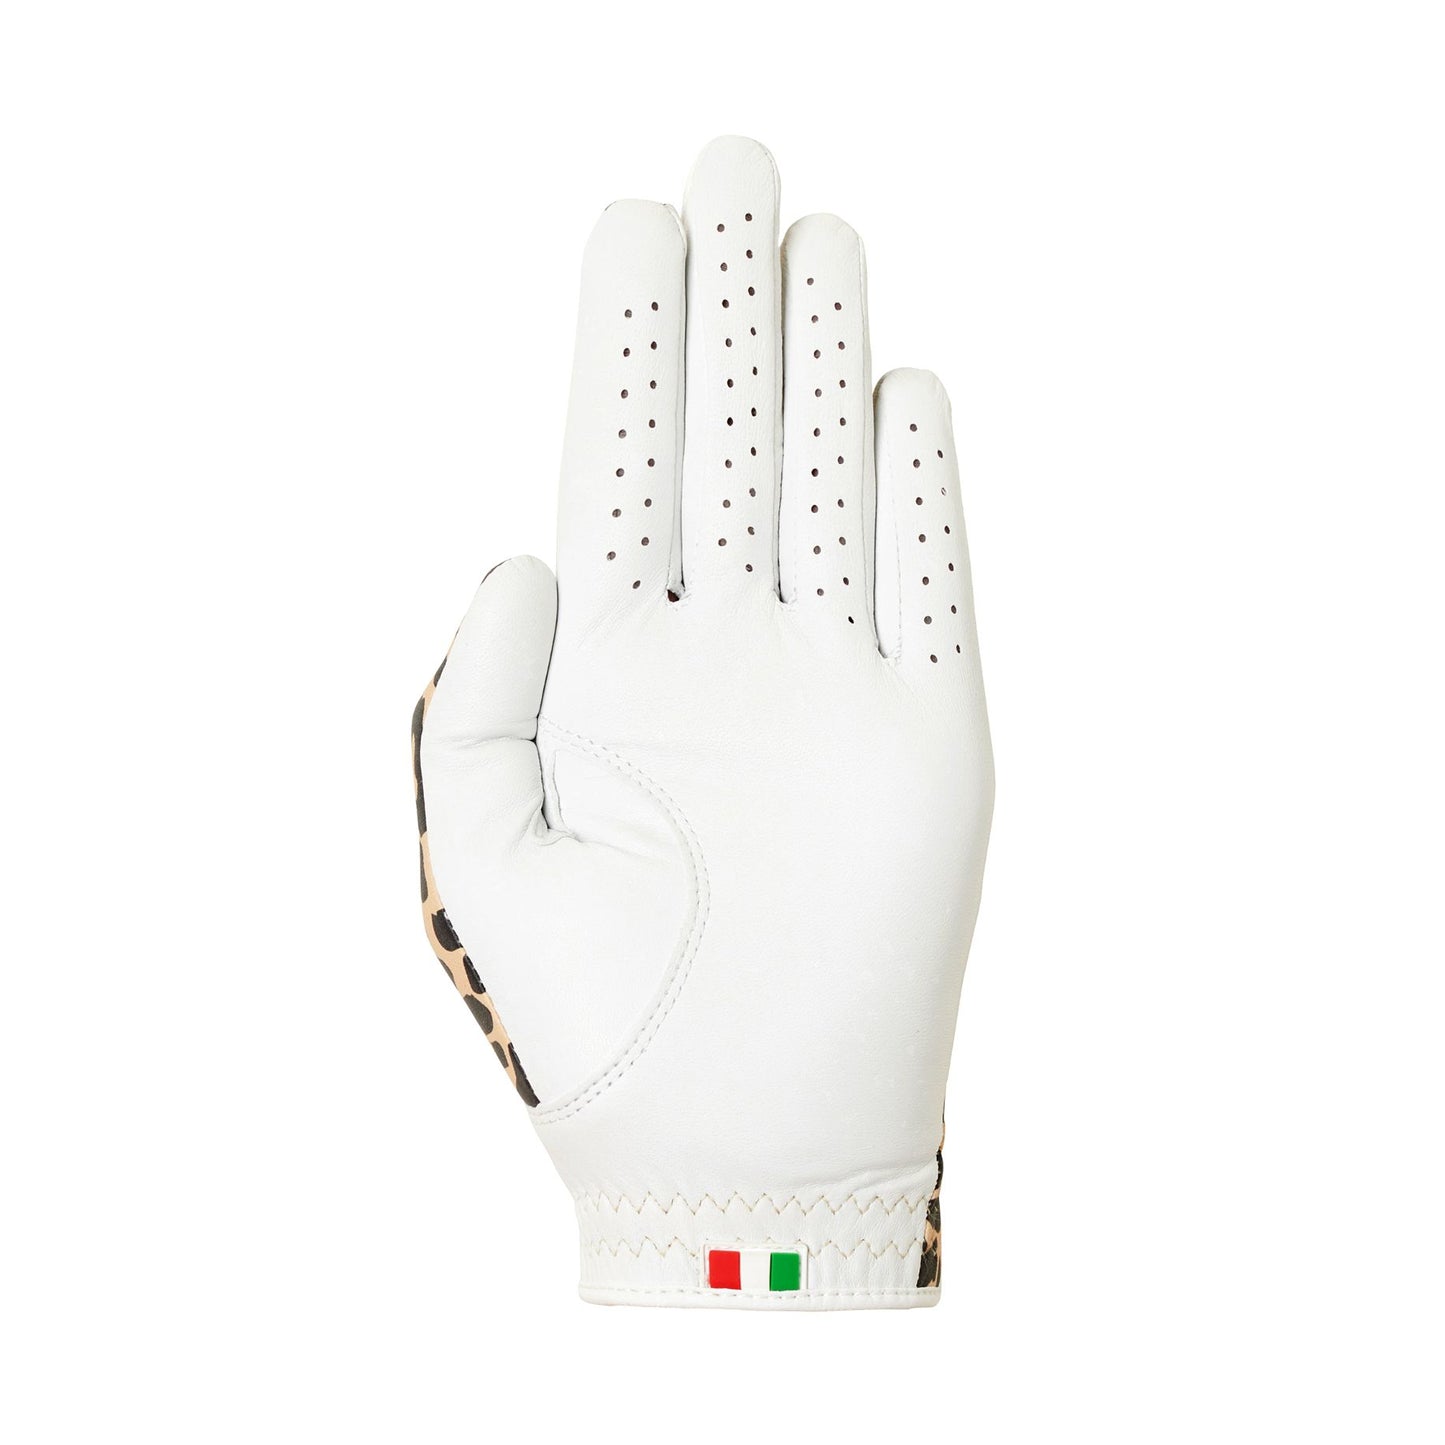 Designer Pro - King Cheetah/White (Left) women's golf glove